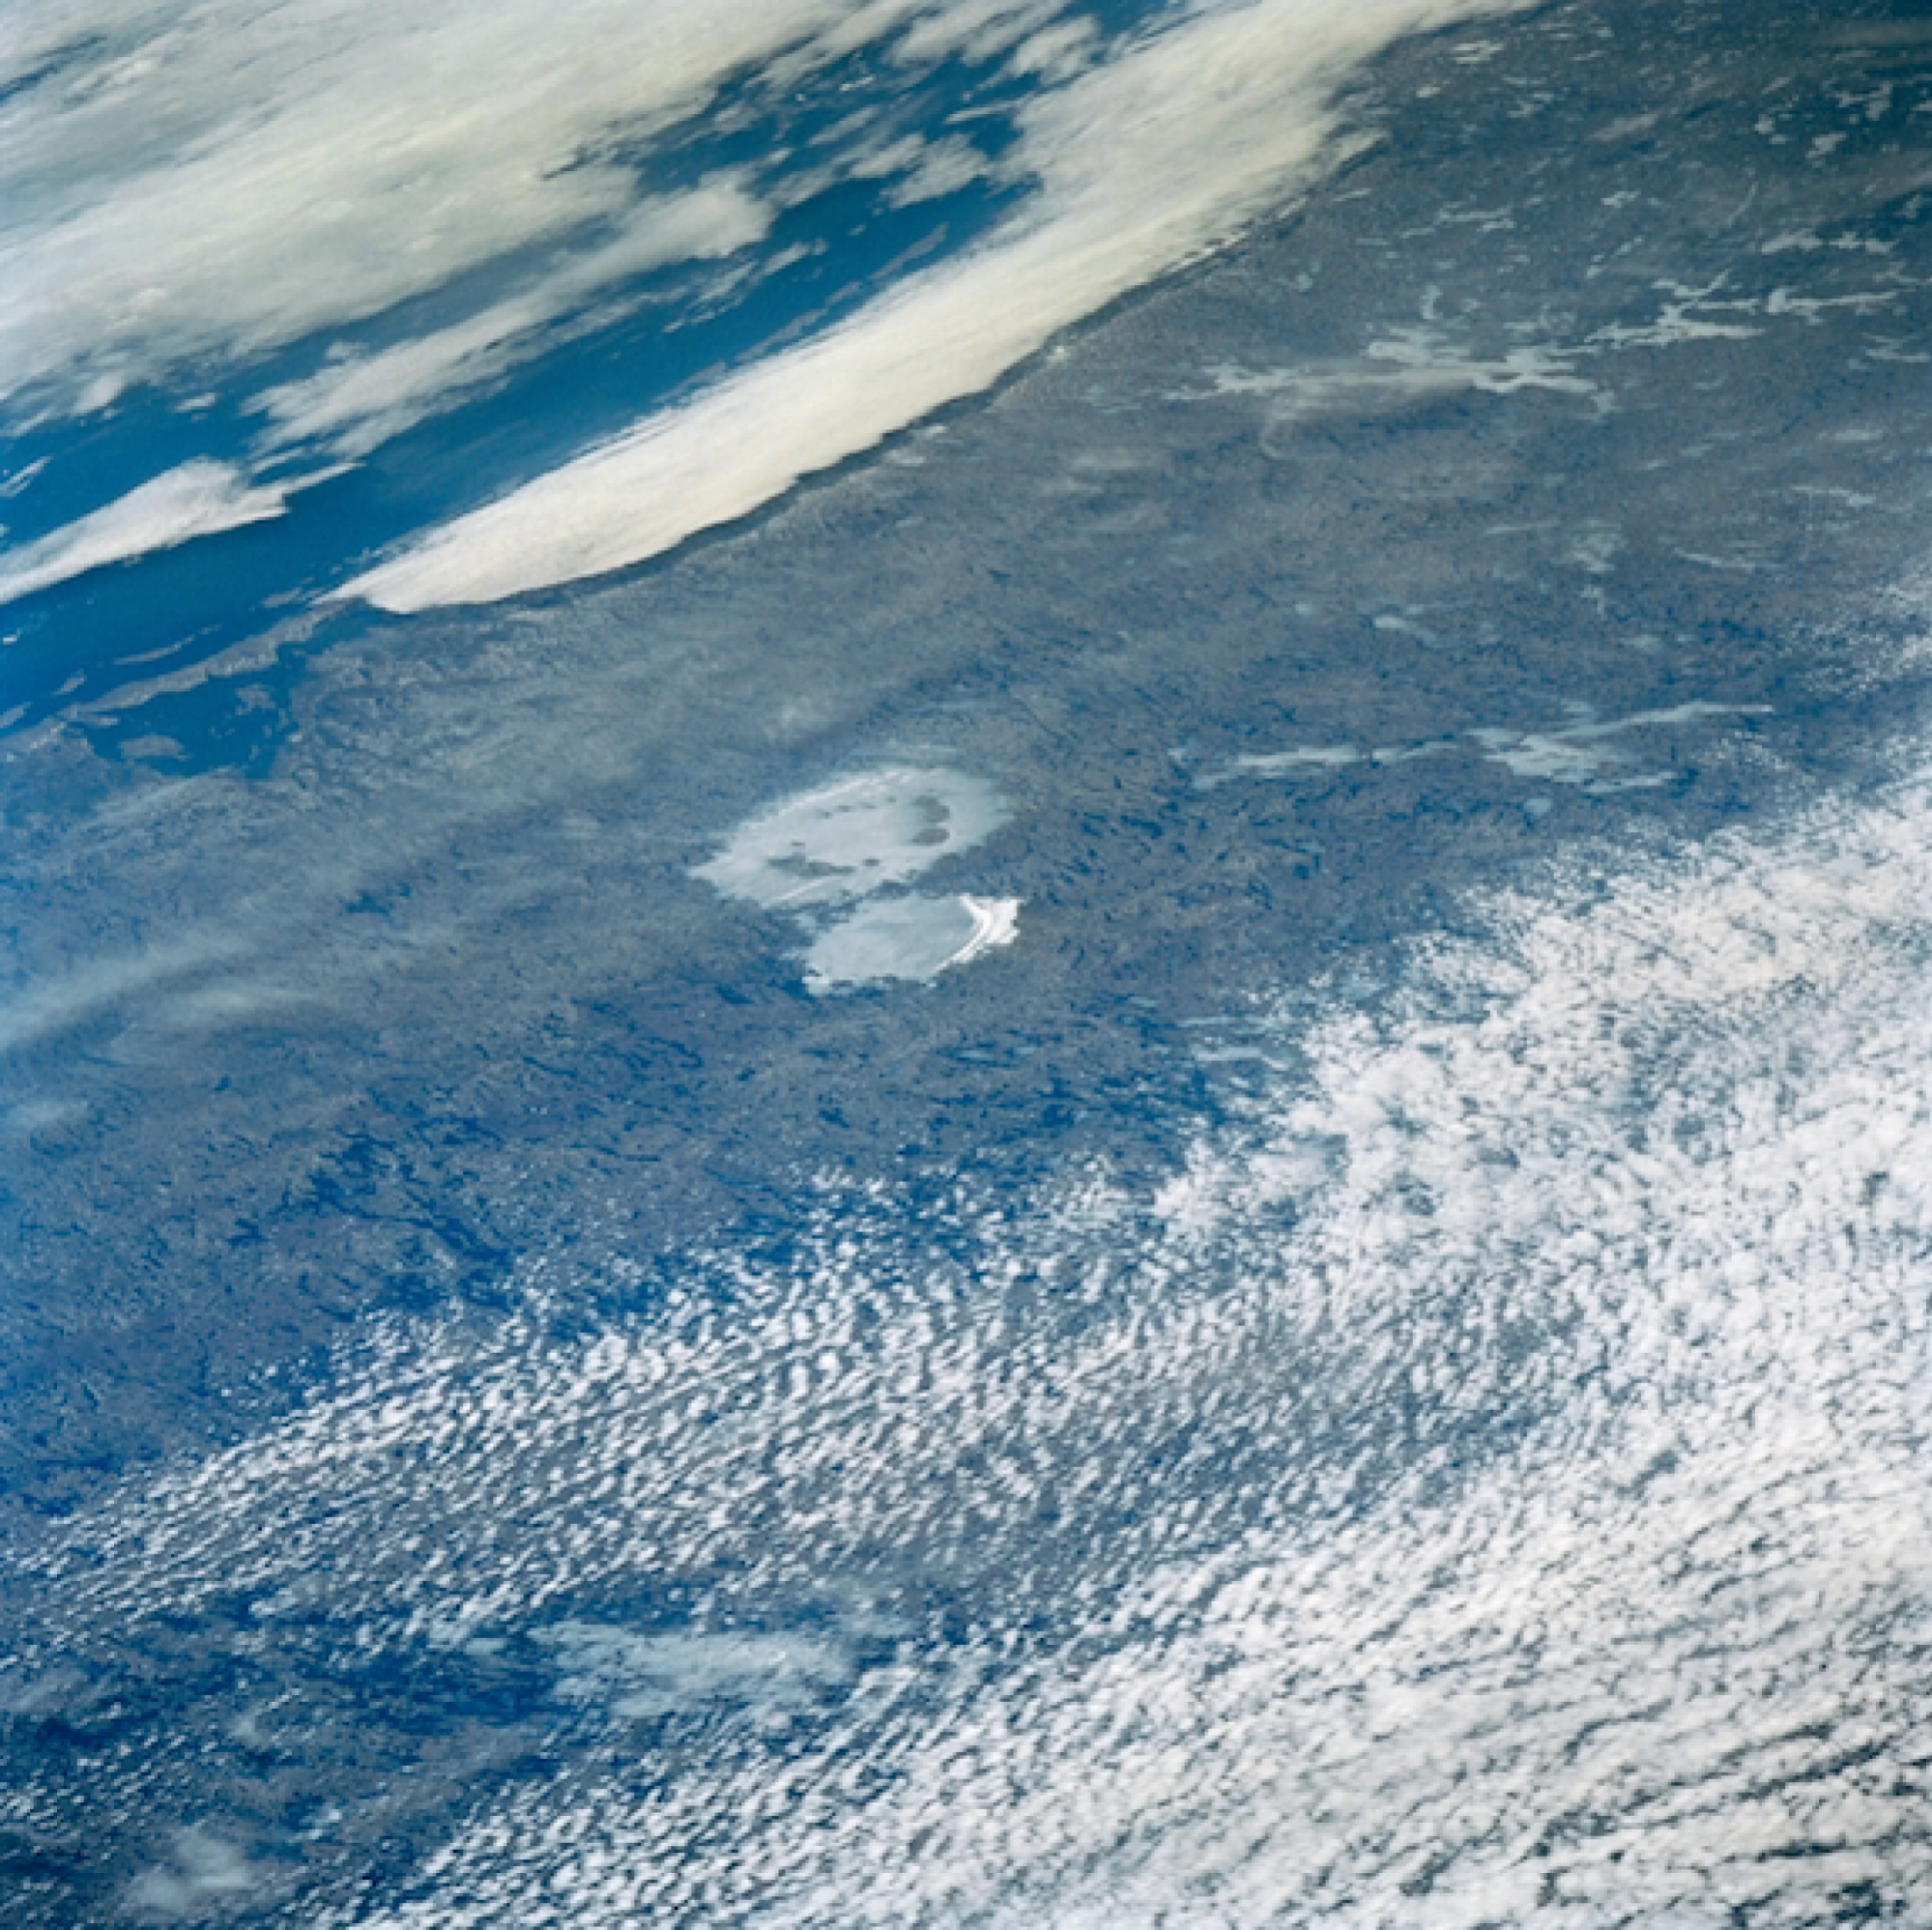 Les cratères des lacs Clearwater dans le nord du Québec, Canada, vus de l'espace.